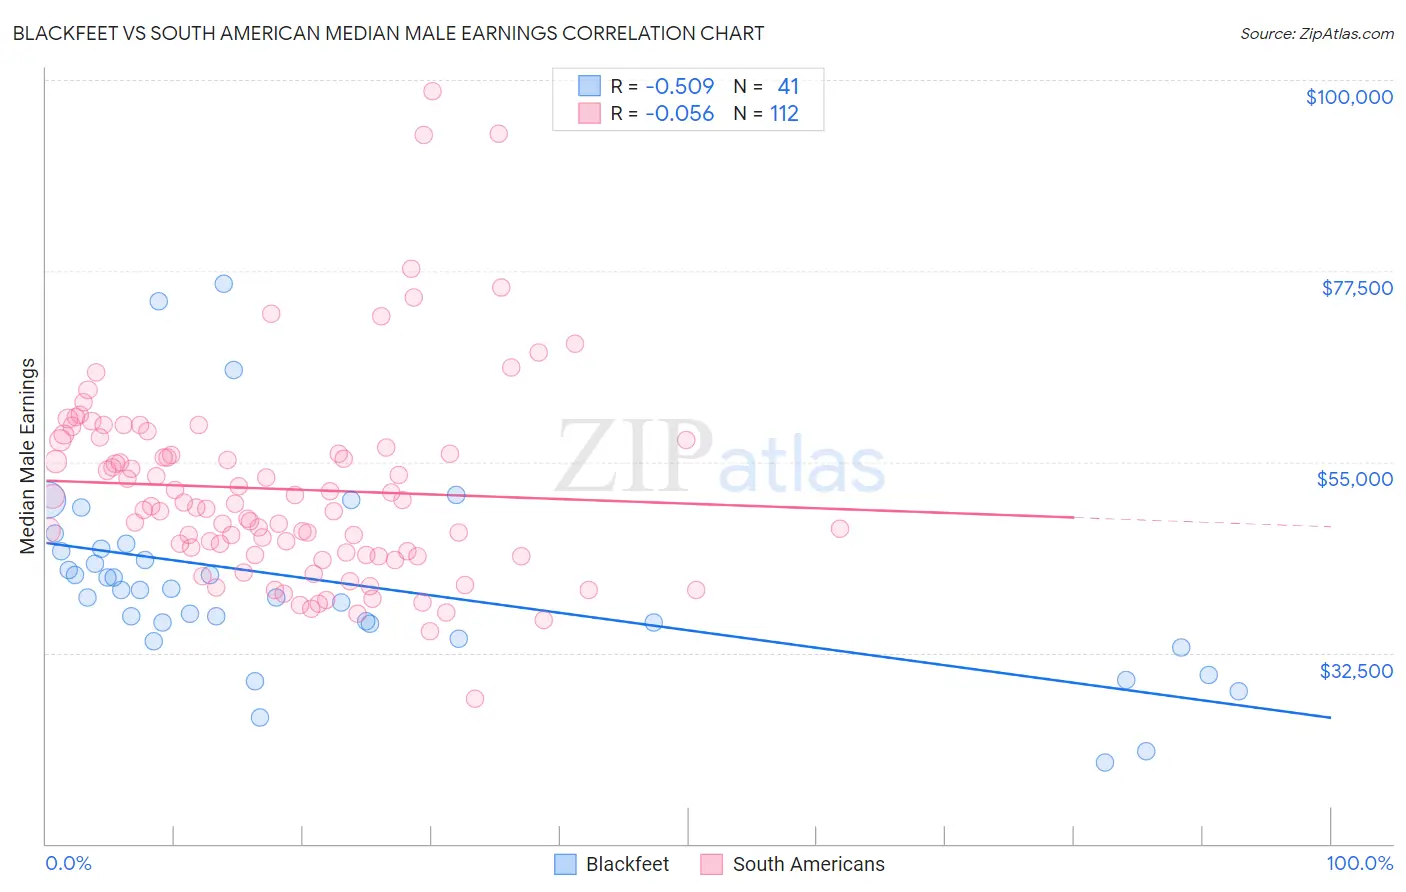 Blackfeet vs South American Median Male Earnings